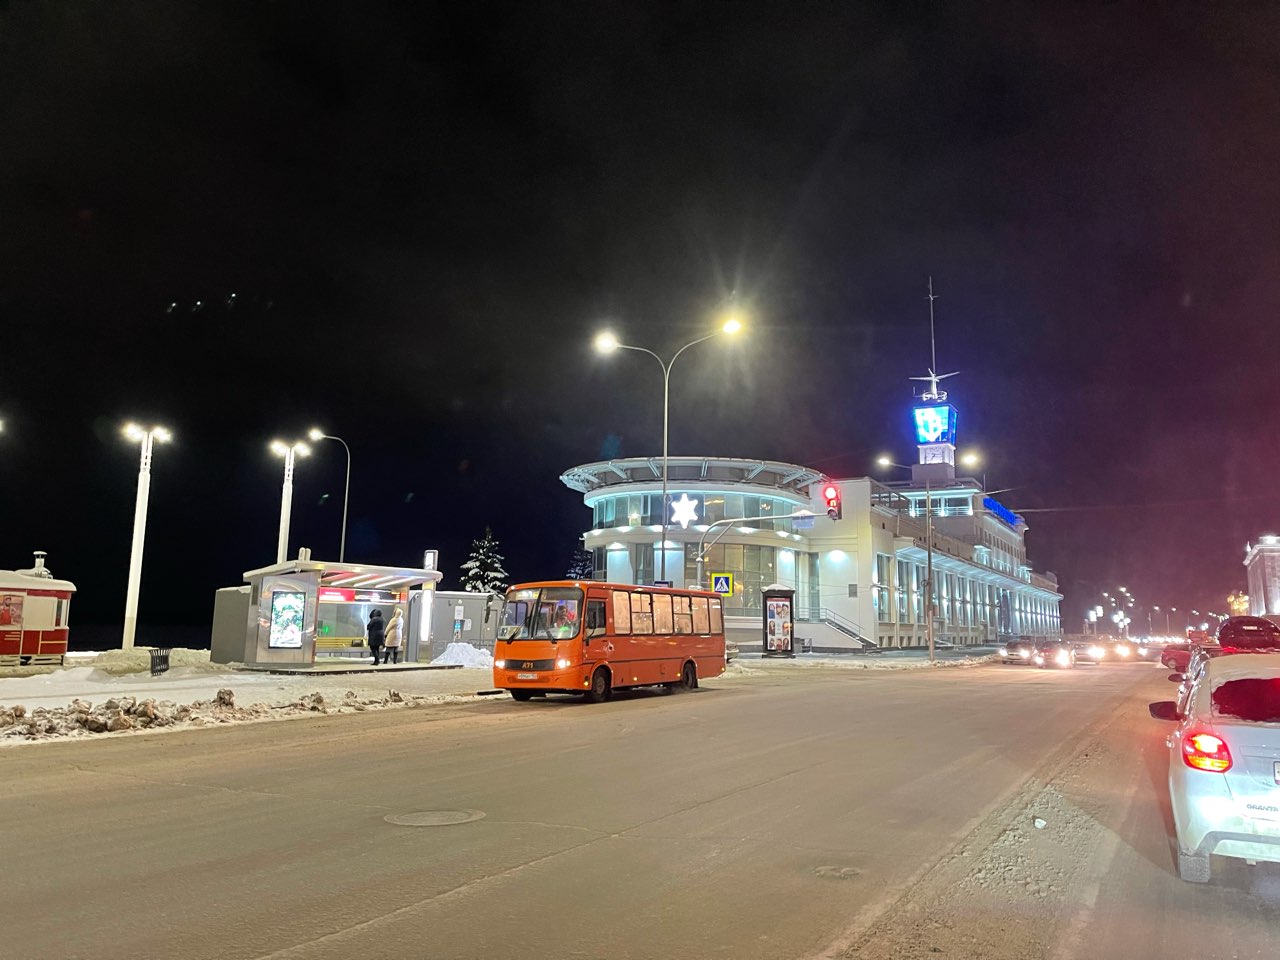 Самые востребованные частные маршруты сохранят в новой маршрутной сети в Нижнем Новгороде  - фото 1